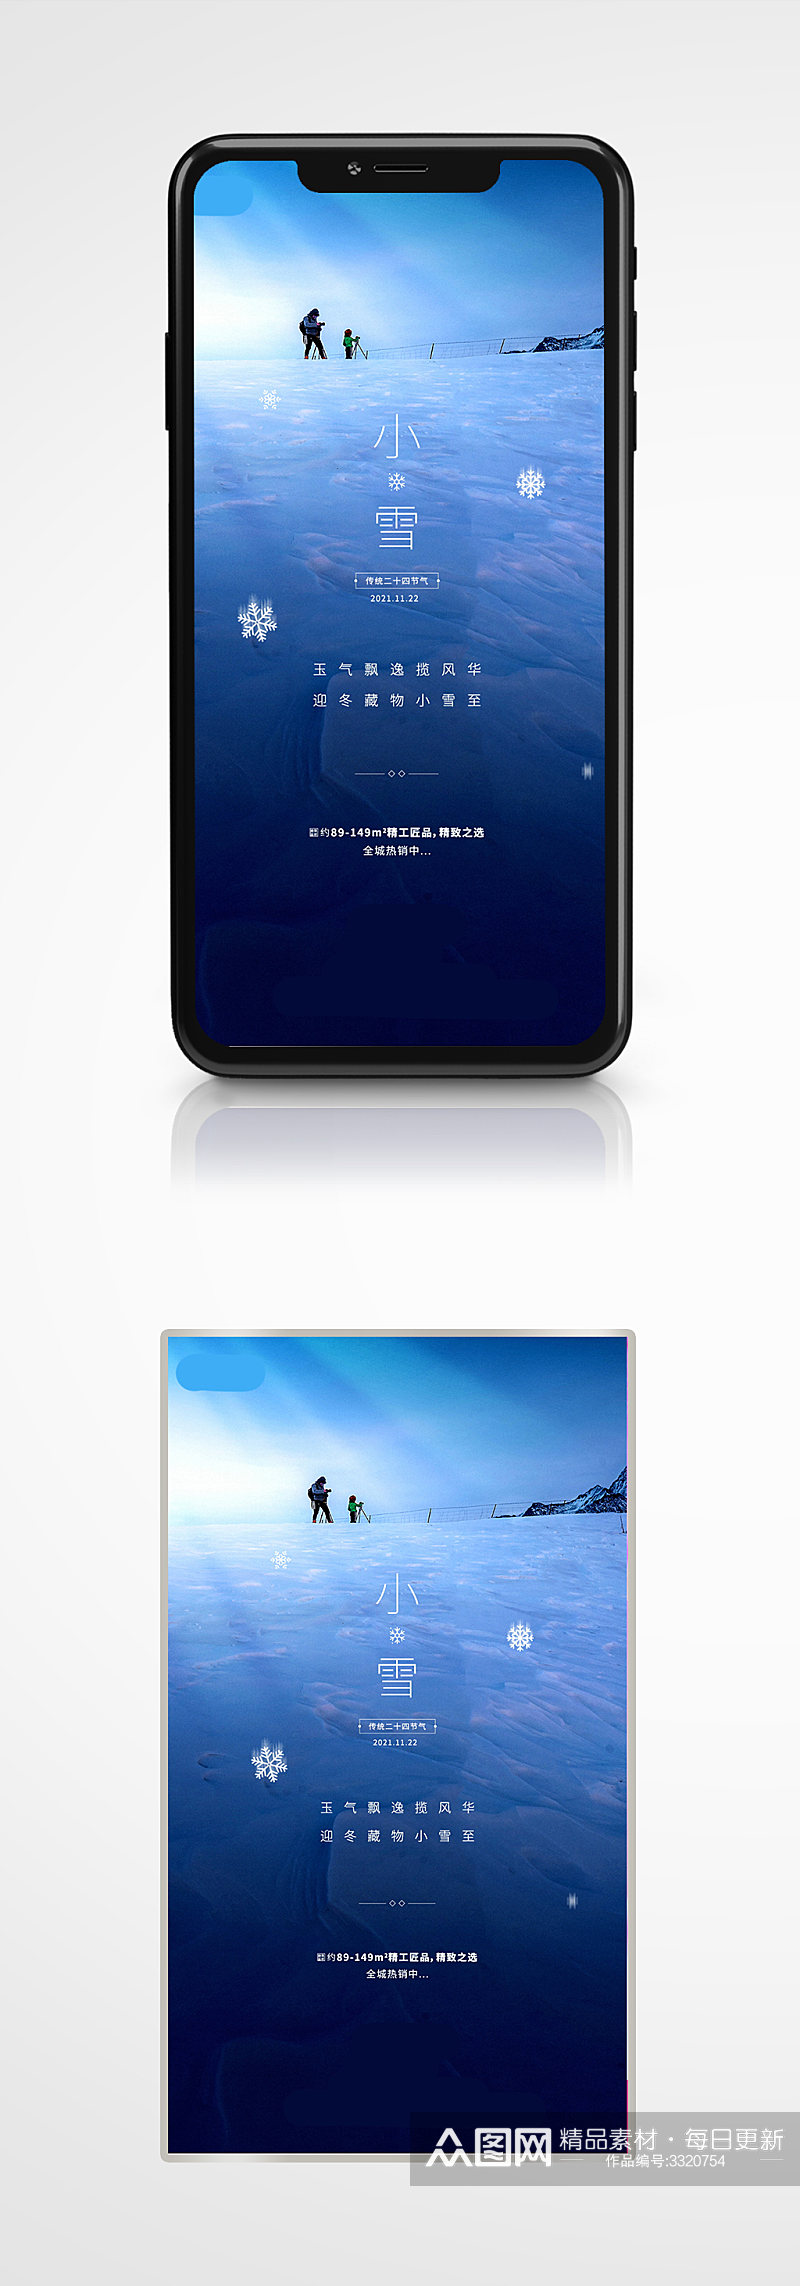 小雪节气雪地摄影图房地产手机海报高端蓝色素材